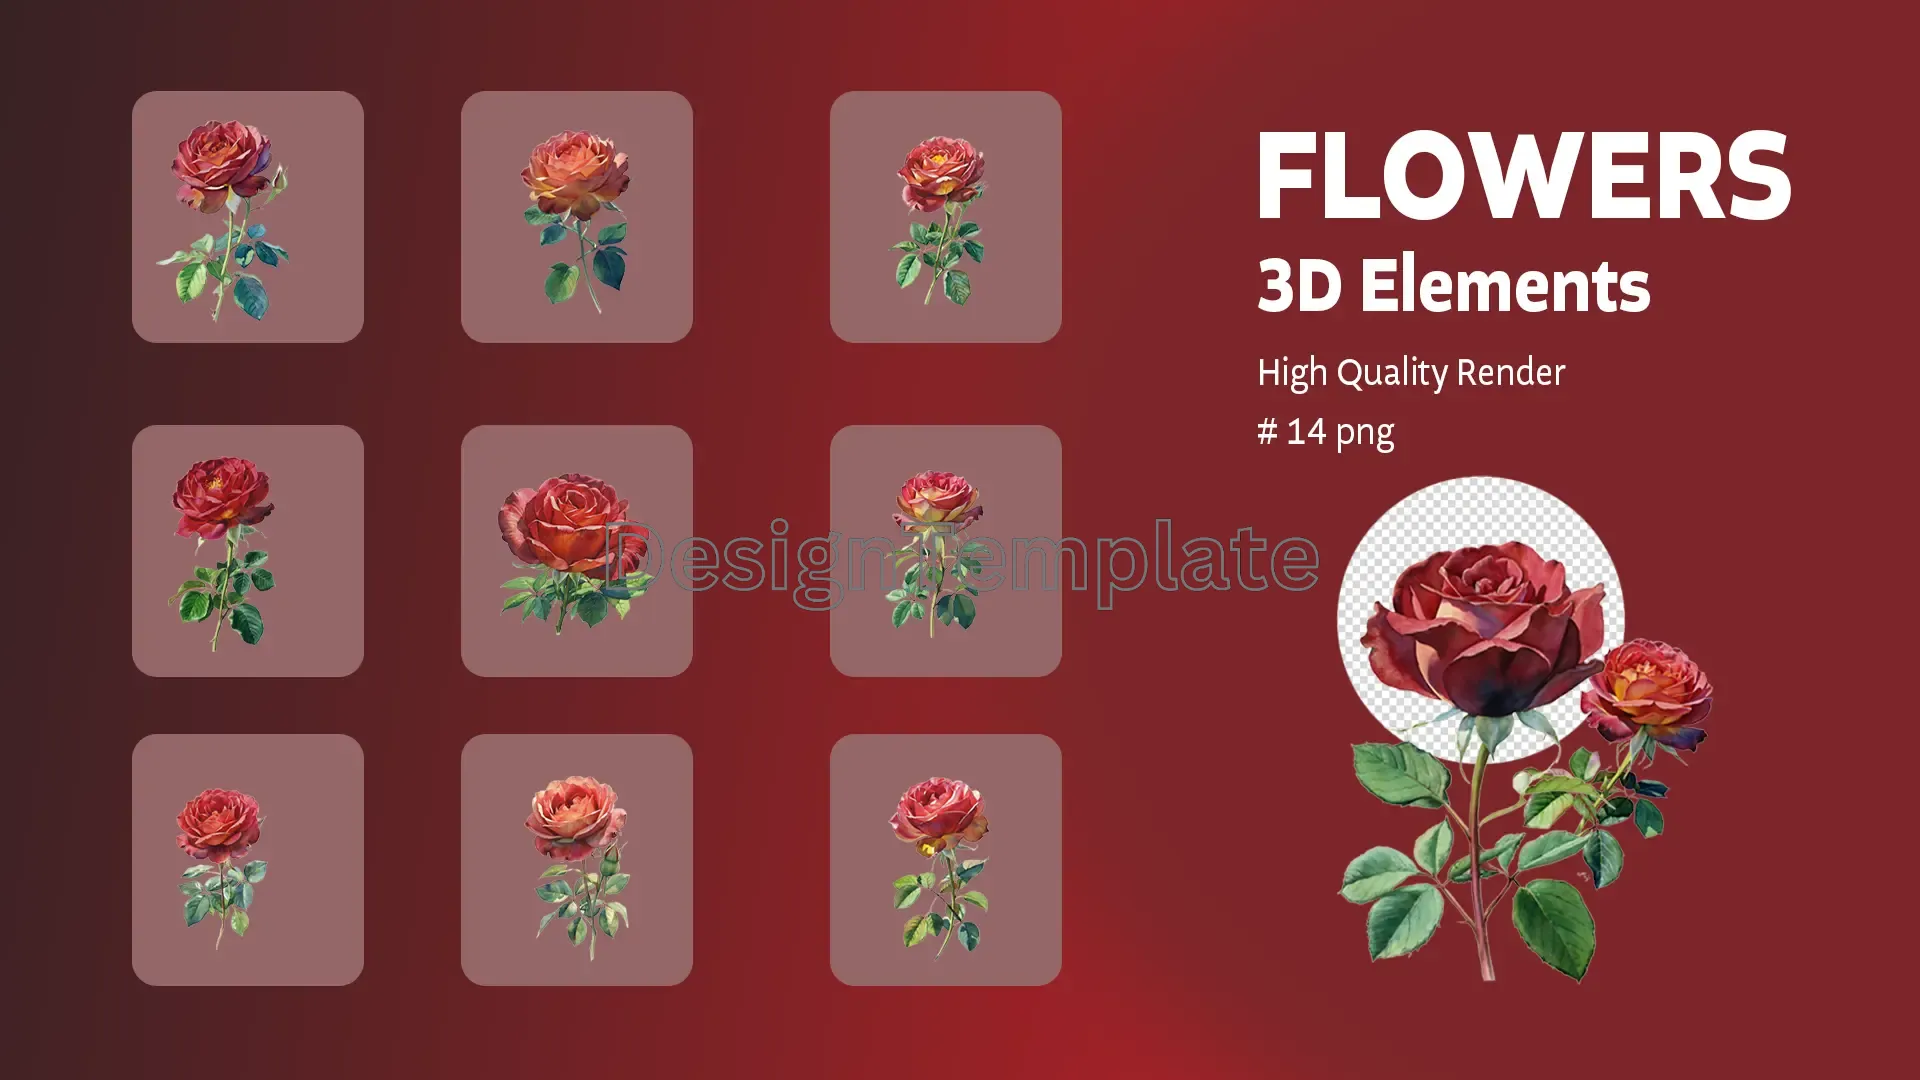 Florist's Fantasy Exquisite Flowers 3D Elements Pack image